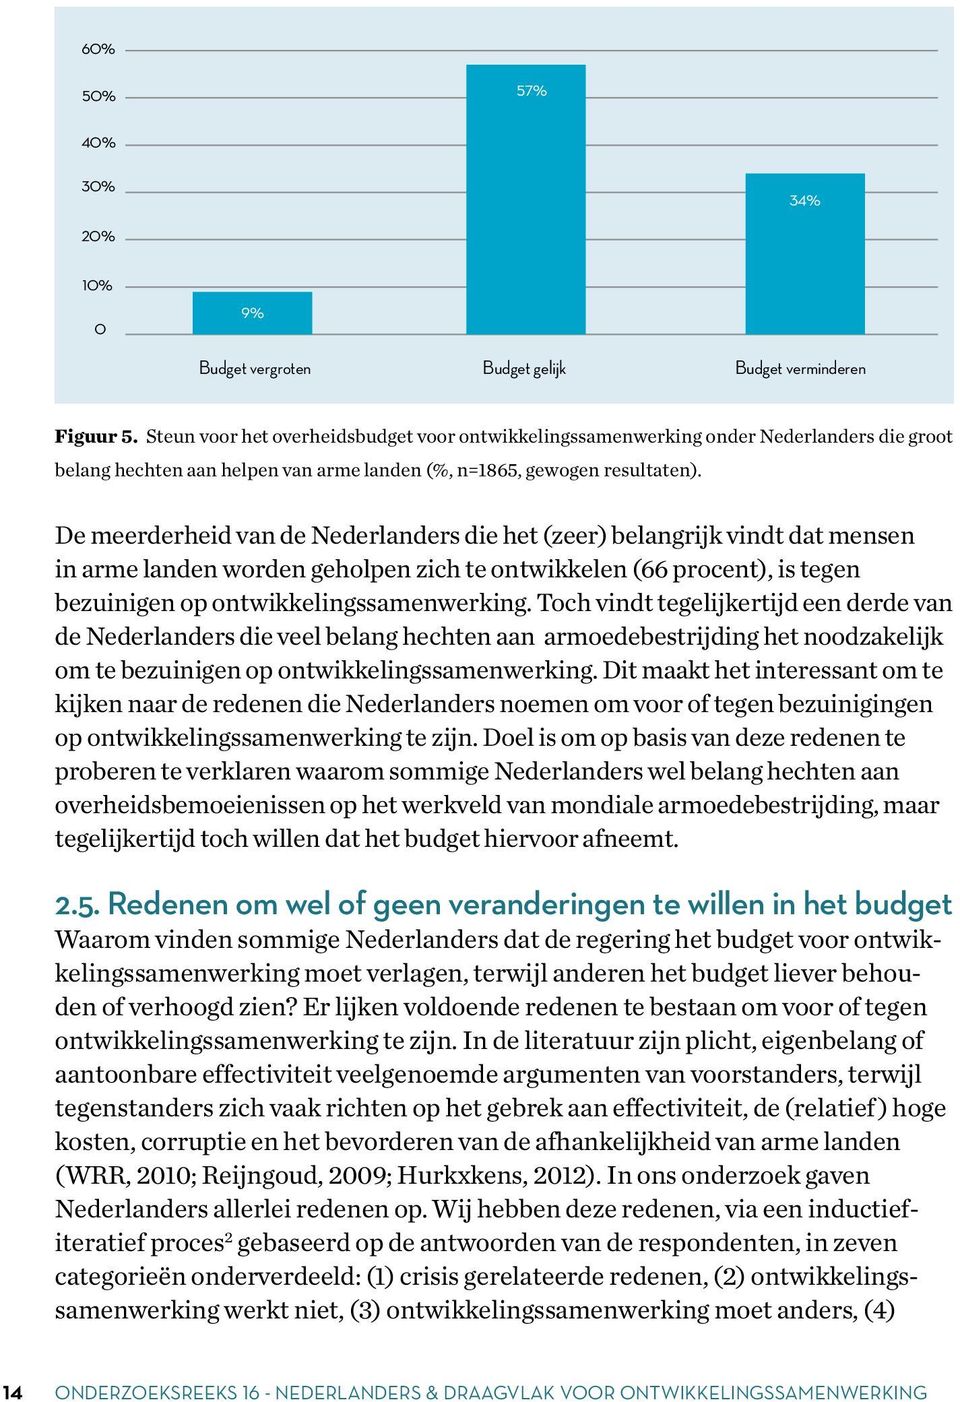 De meerderheid van de Nederlanders die het (zeer) belangrijk vindt dat mensen in arme landen worden geholpen zich te ontwikkelen (66 procent), is tegen bezuinigen op ontwikkelingssamenwerking.